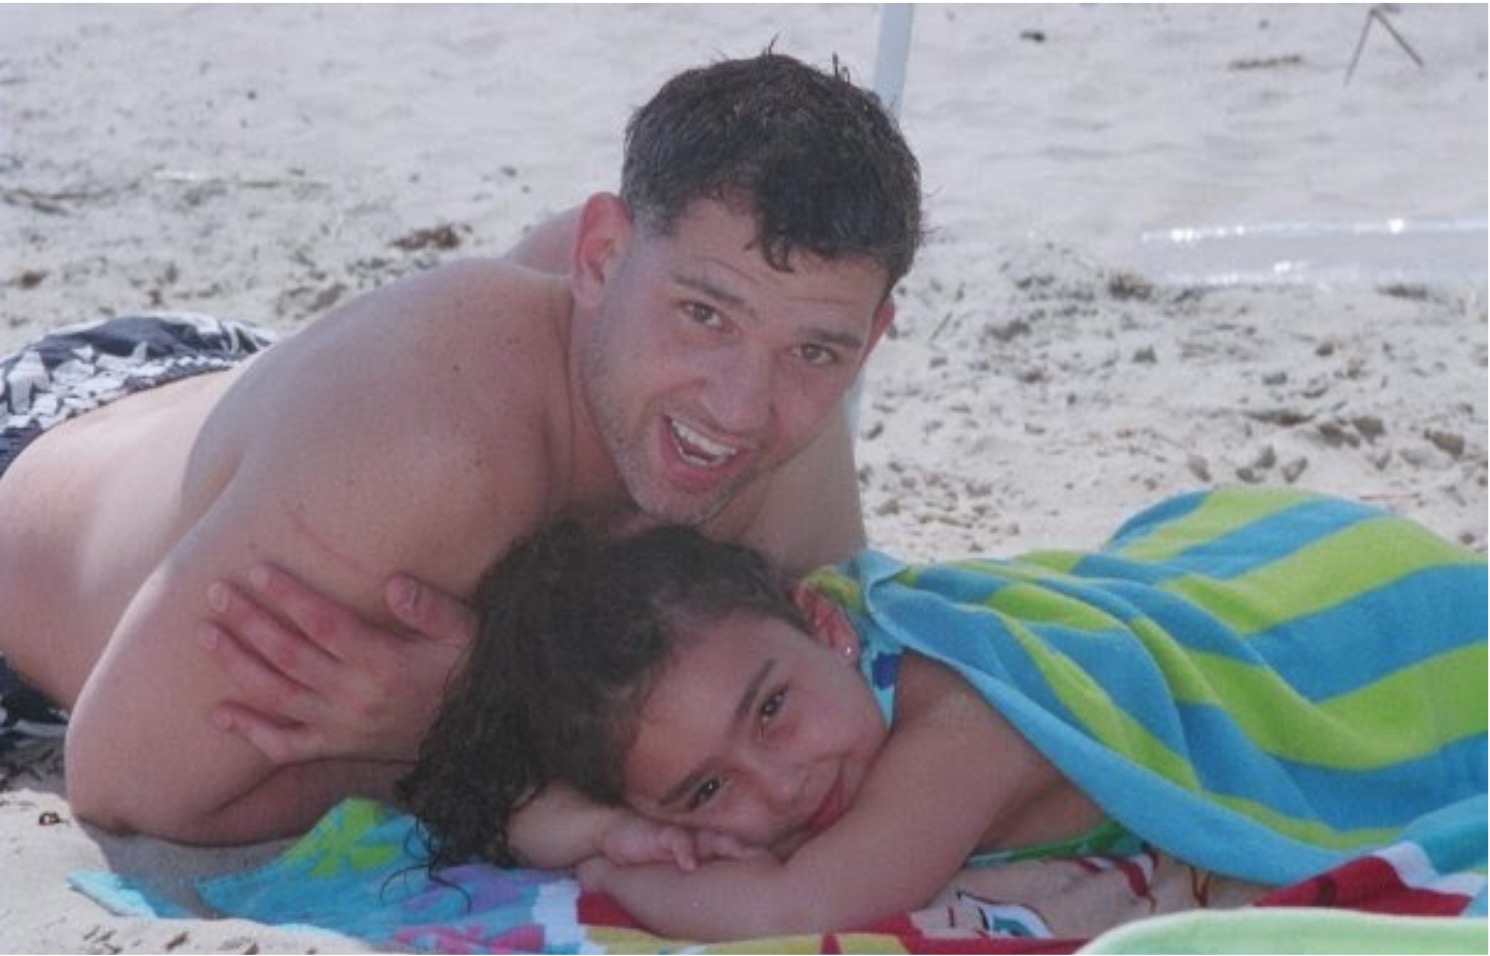 Jason and Gianna at the town beach in Charlestown, RI around 2010.